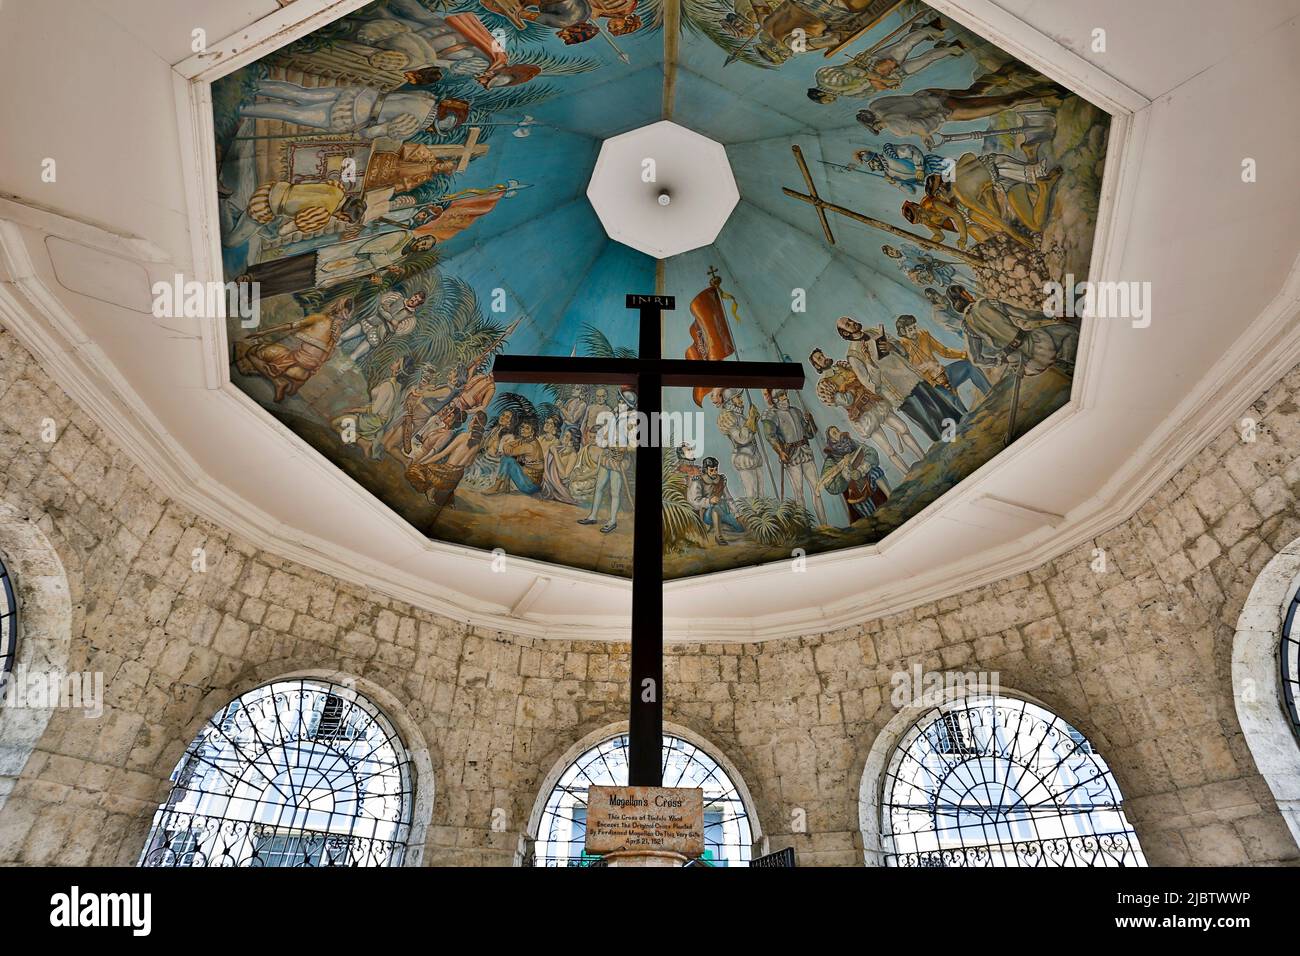 La Croce di Magellano è una croce cristiana piantata da esploratori portoghesi e spagnoli come ordinato da Ferdinando Magellano all'arrivo a Cebu nel Phili Foto Stock